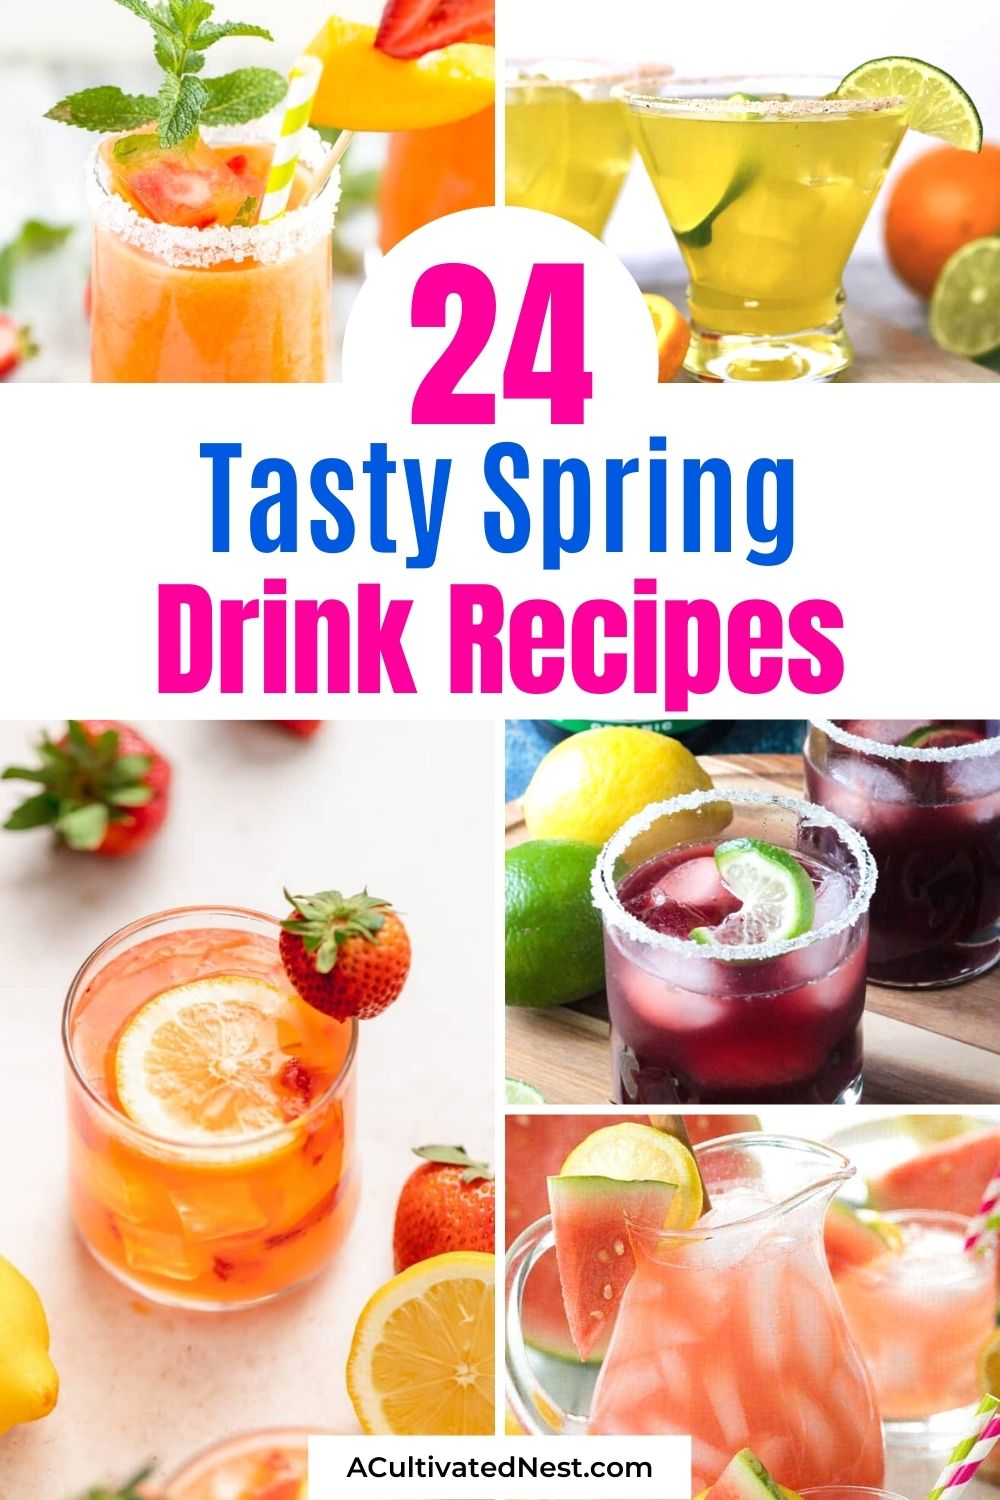 24 Tasty Spring Drink Recipes